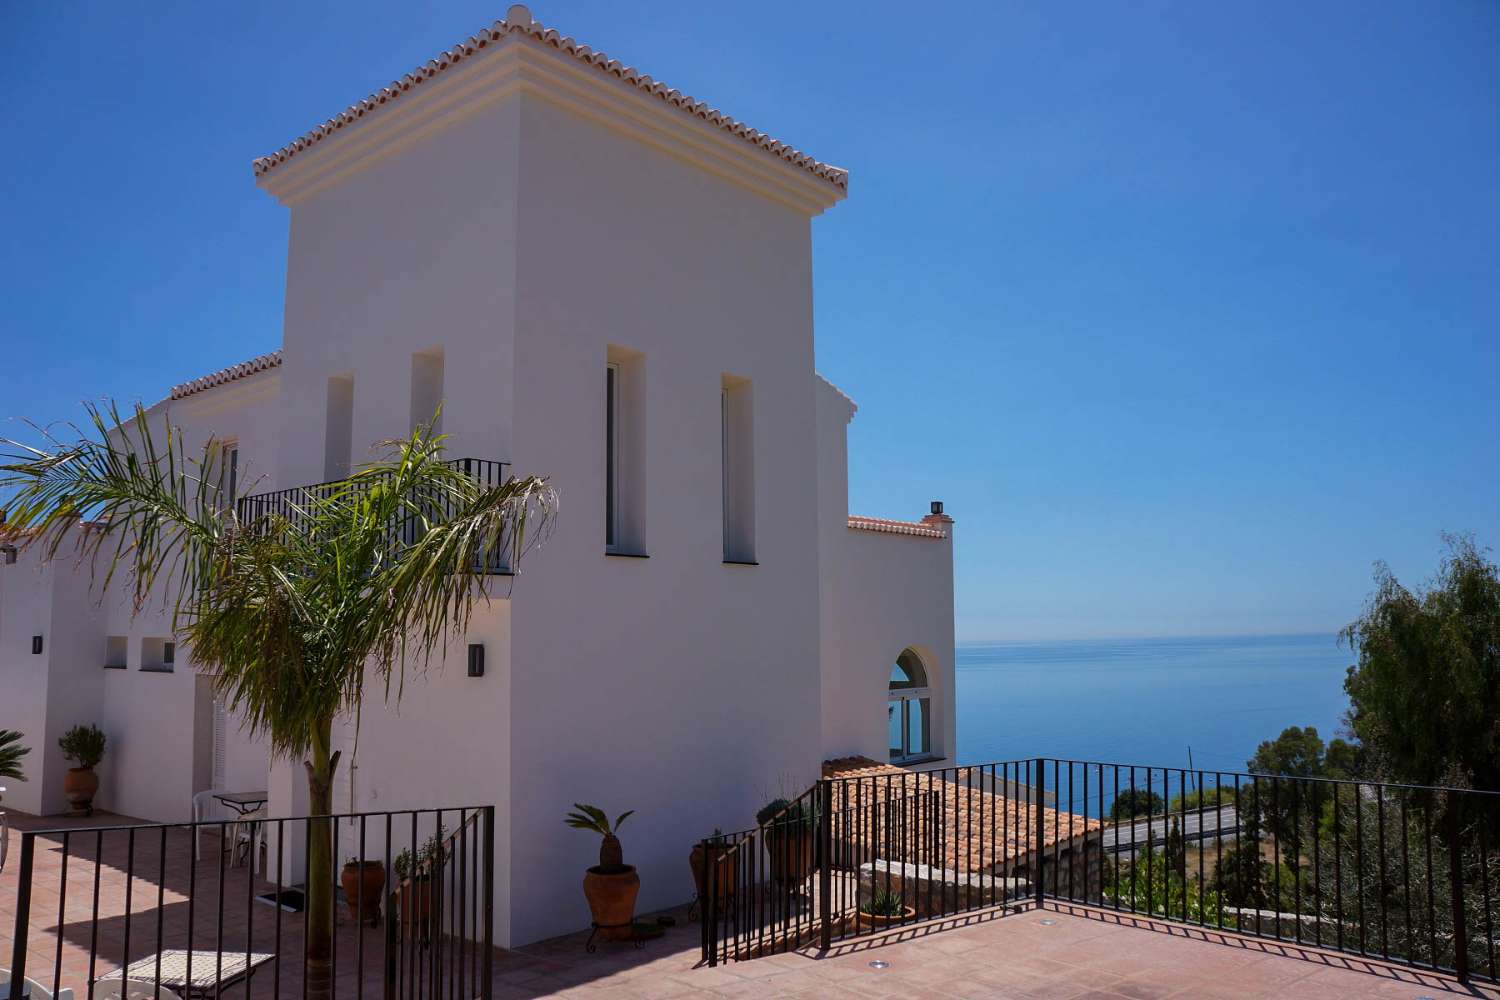 Impressive villa with sea views in Salobrena